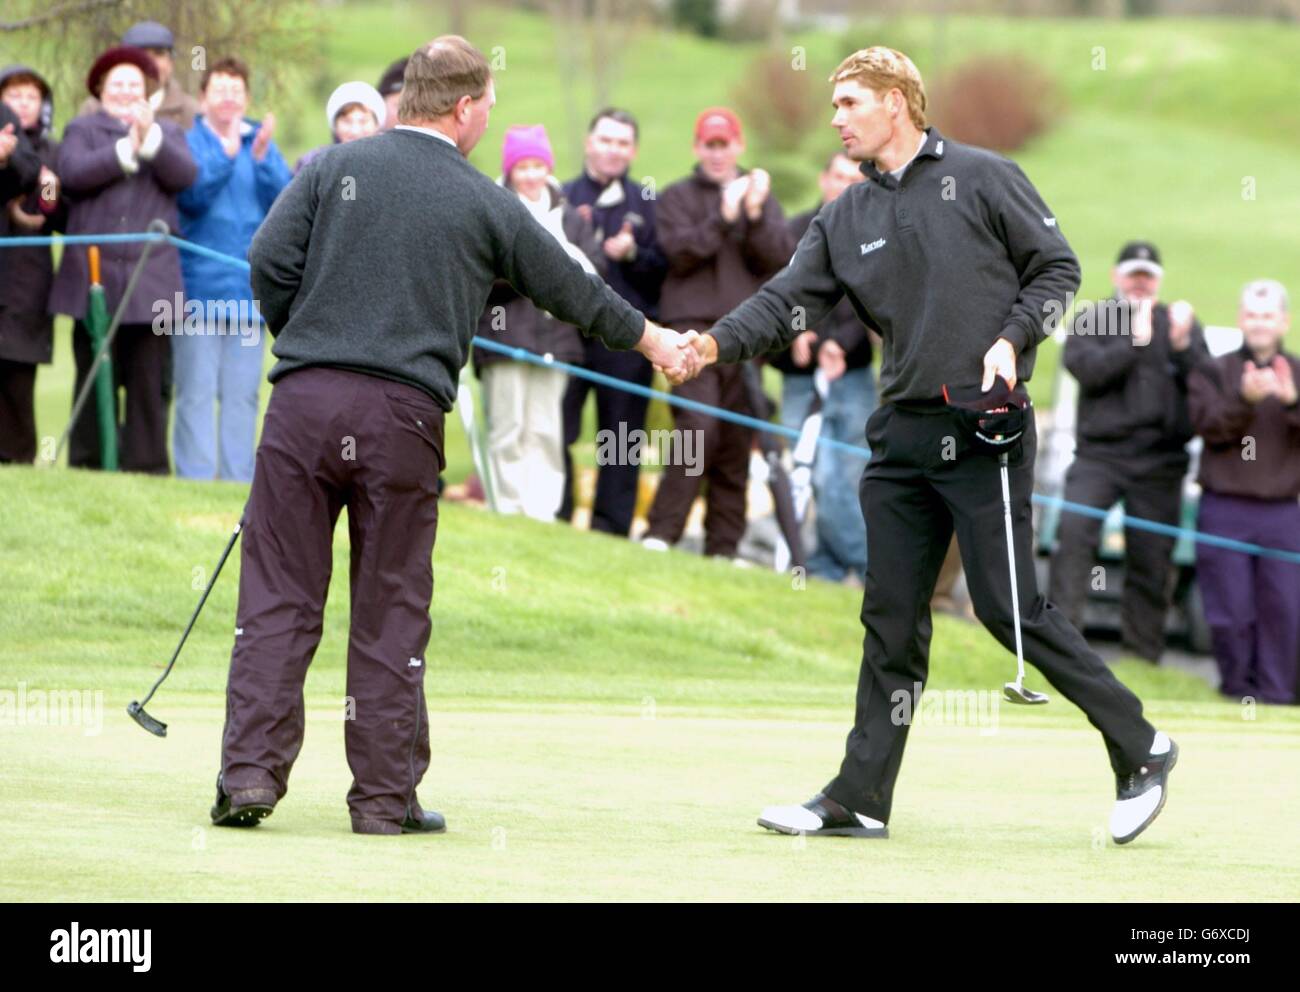 L'Ireland Padraig Harrington se serre les mains avec son partenaire, Phillip Walton, après avoir remporté le championnat Irish PGA 2004 au parcours de golf de St. Margaret's, Co Dublin, Irlande. Banque D'Images